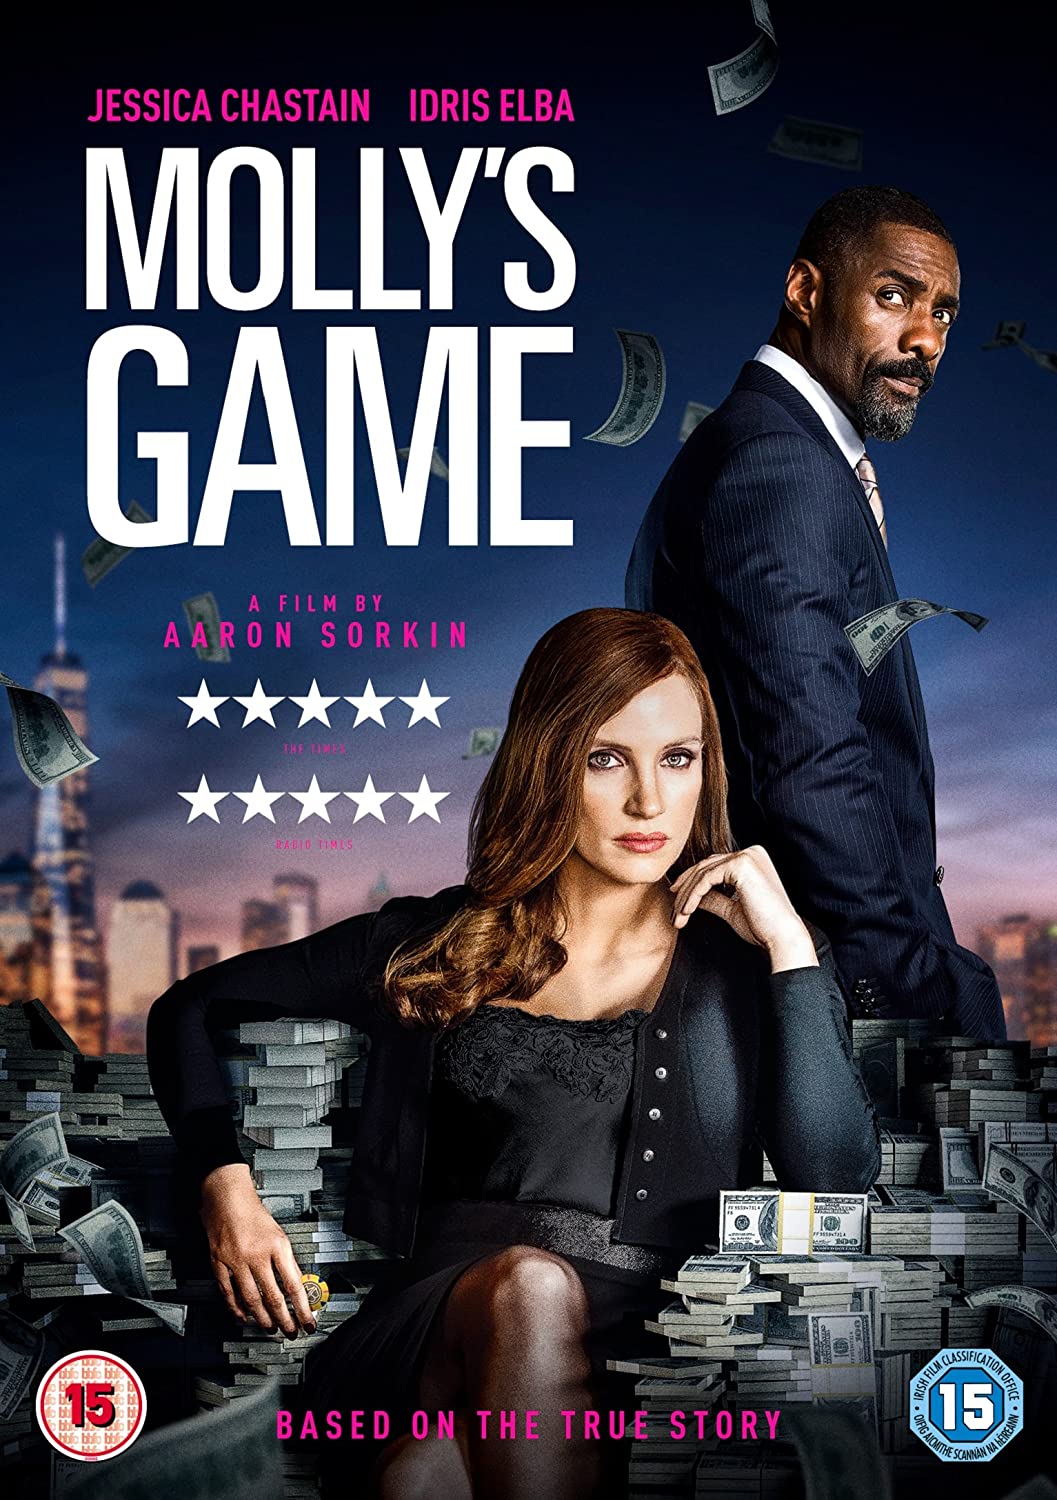 Molly's Game - Crime/Drama [DVD]